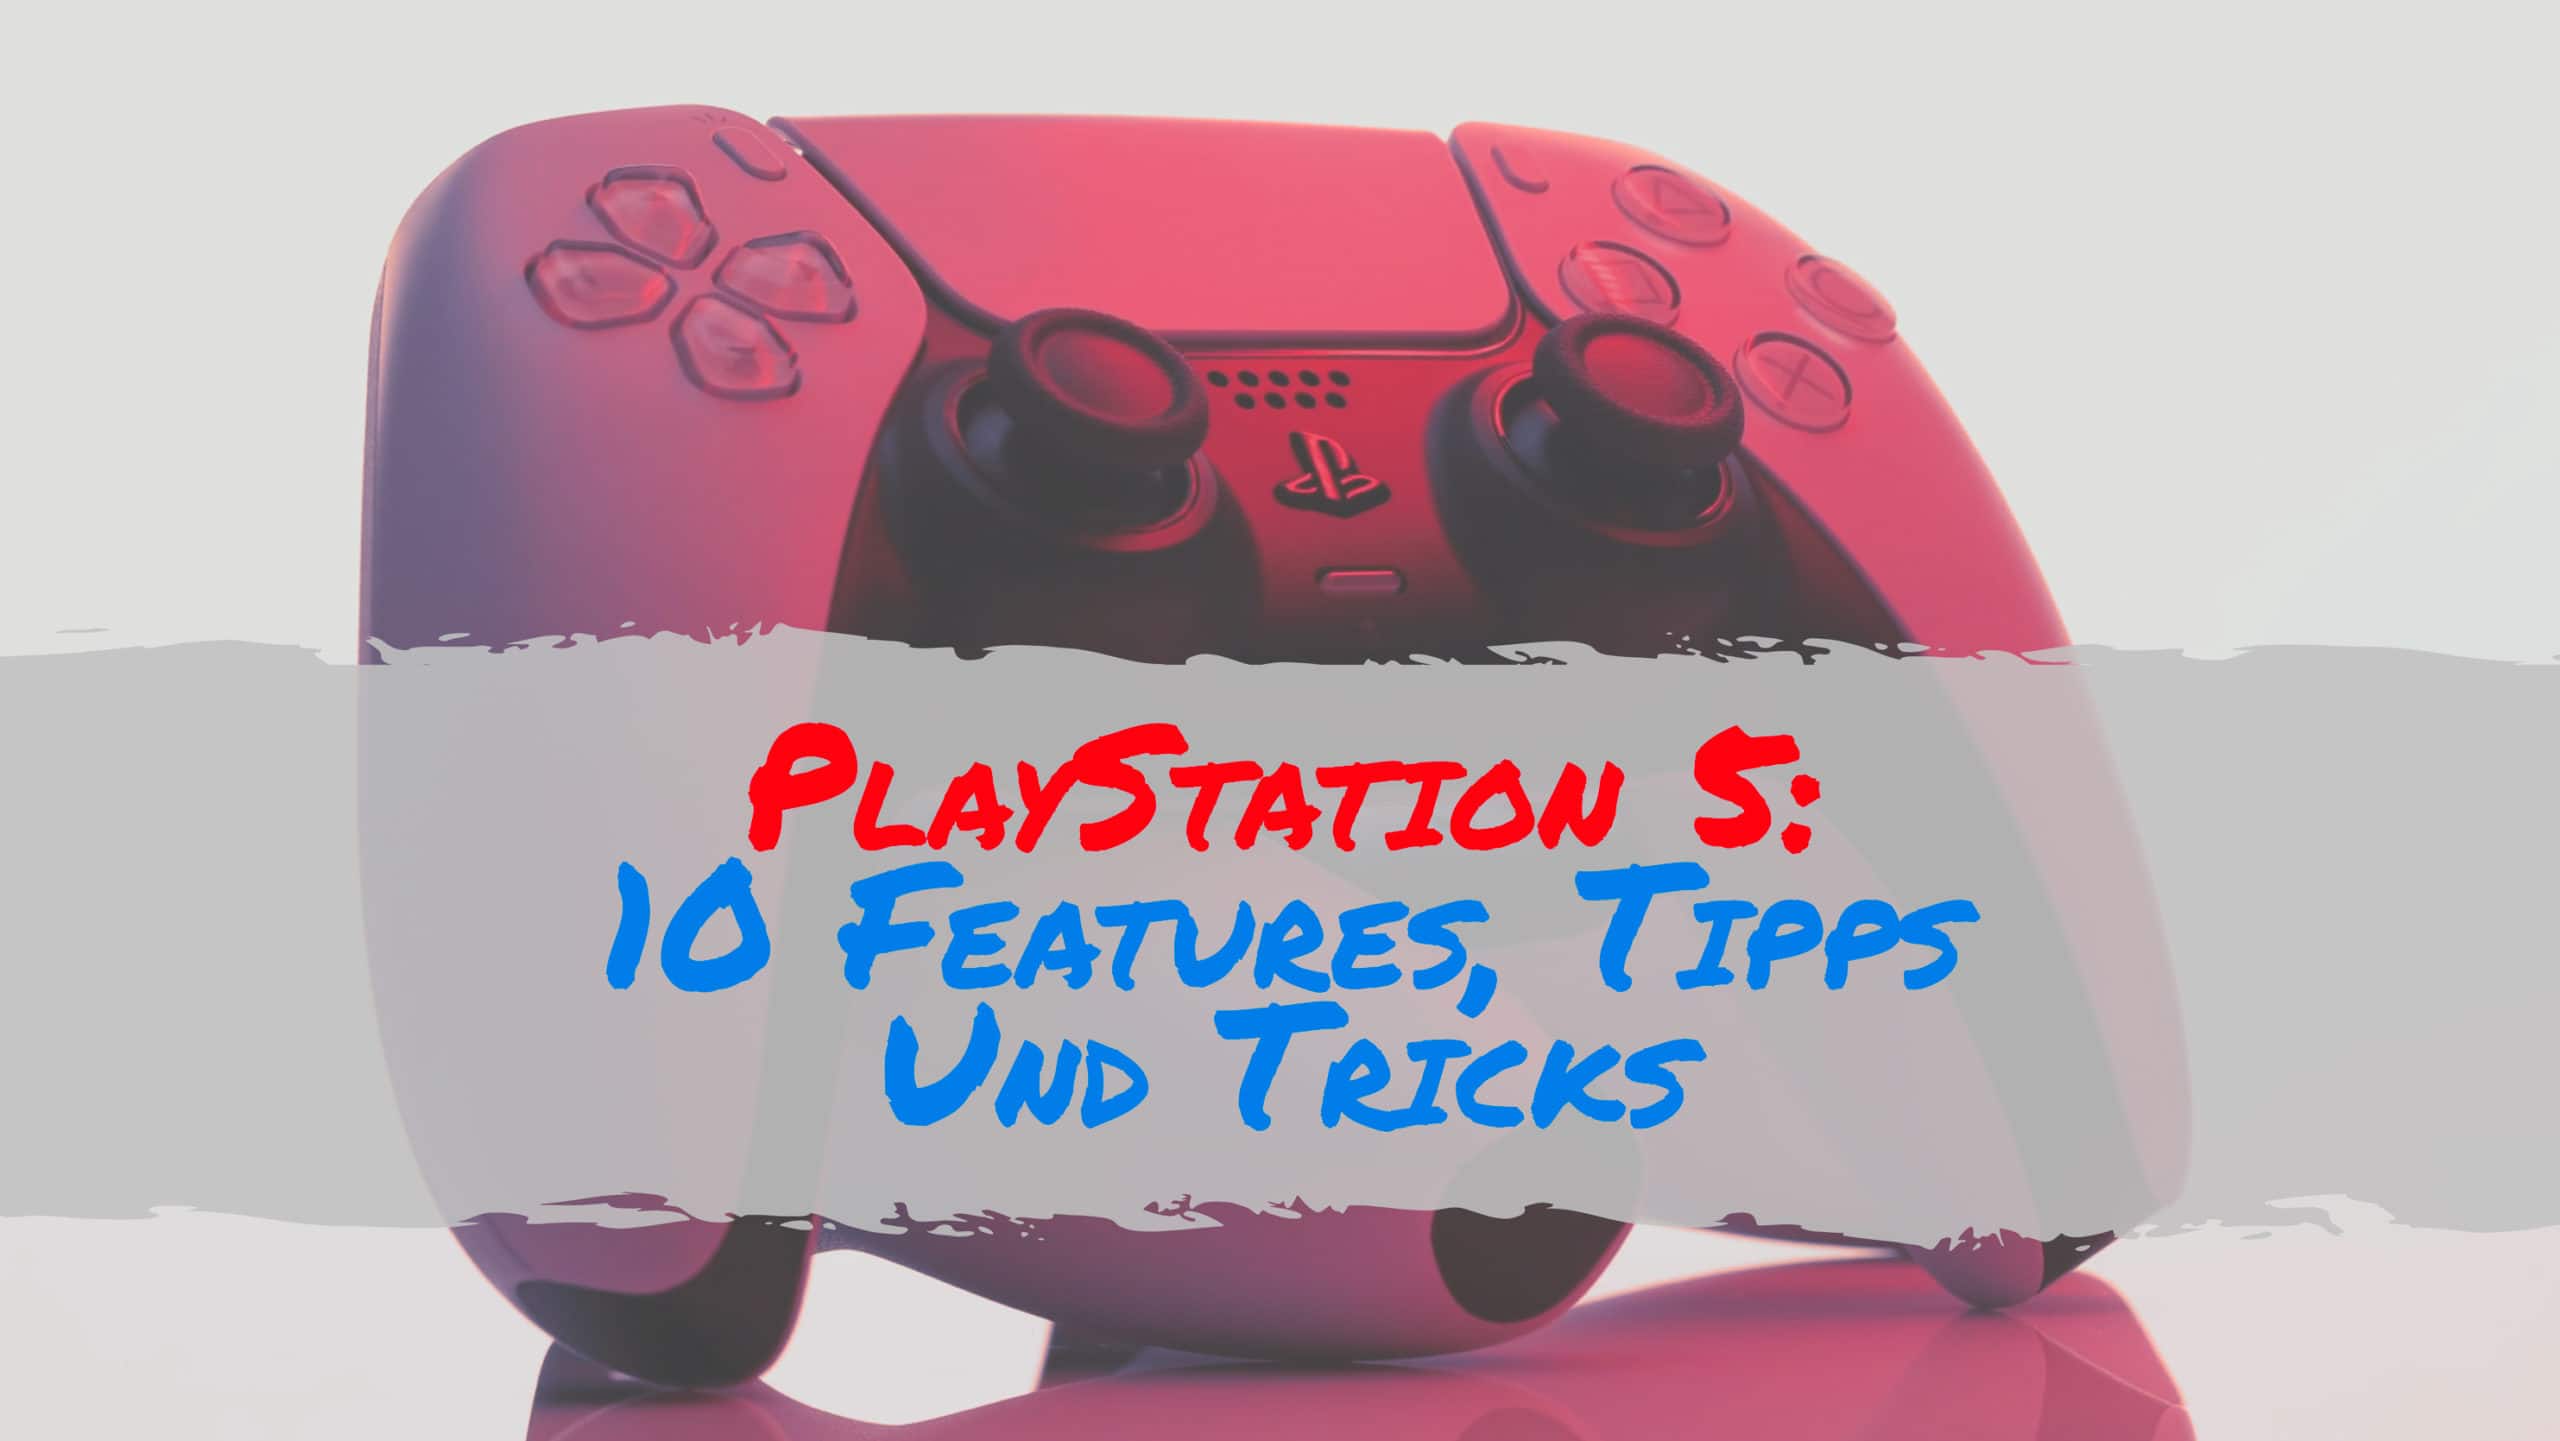 PlayStation 5: 10 Features, Tipps Und Tricks